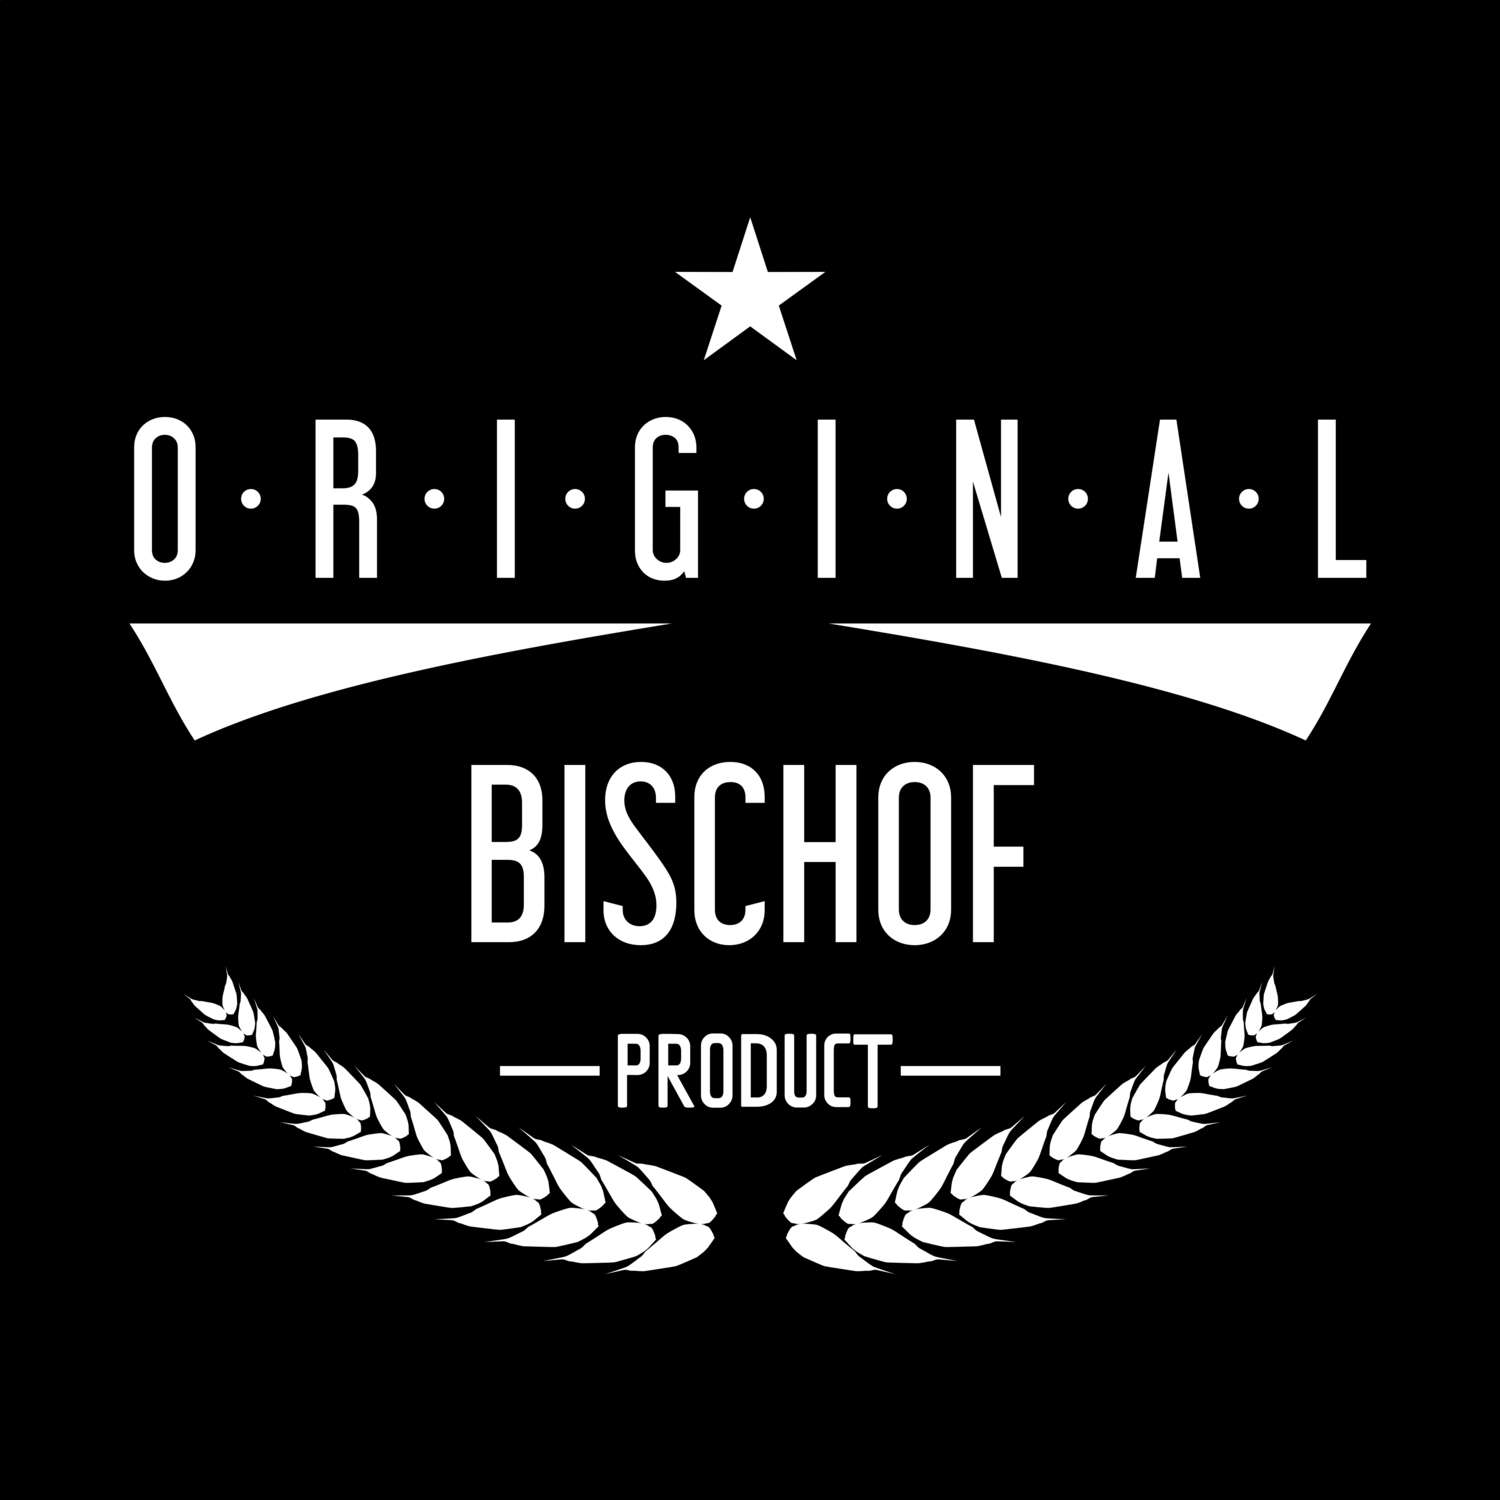 Bischof T-Shirt »Original Product«